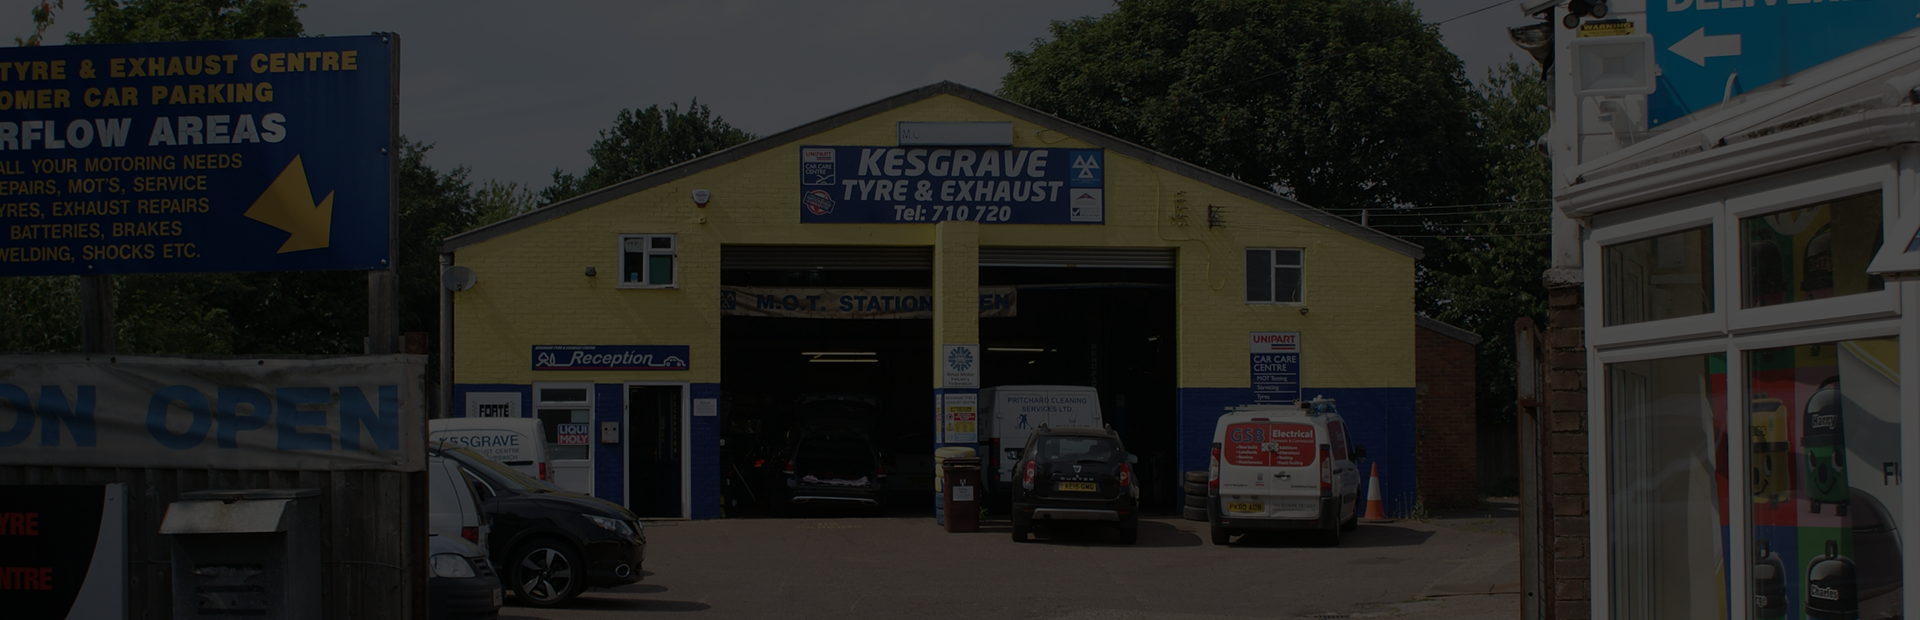 Kesgrave Tyre & Exhaust Centre